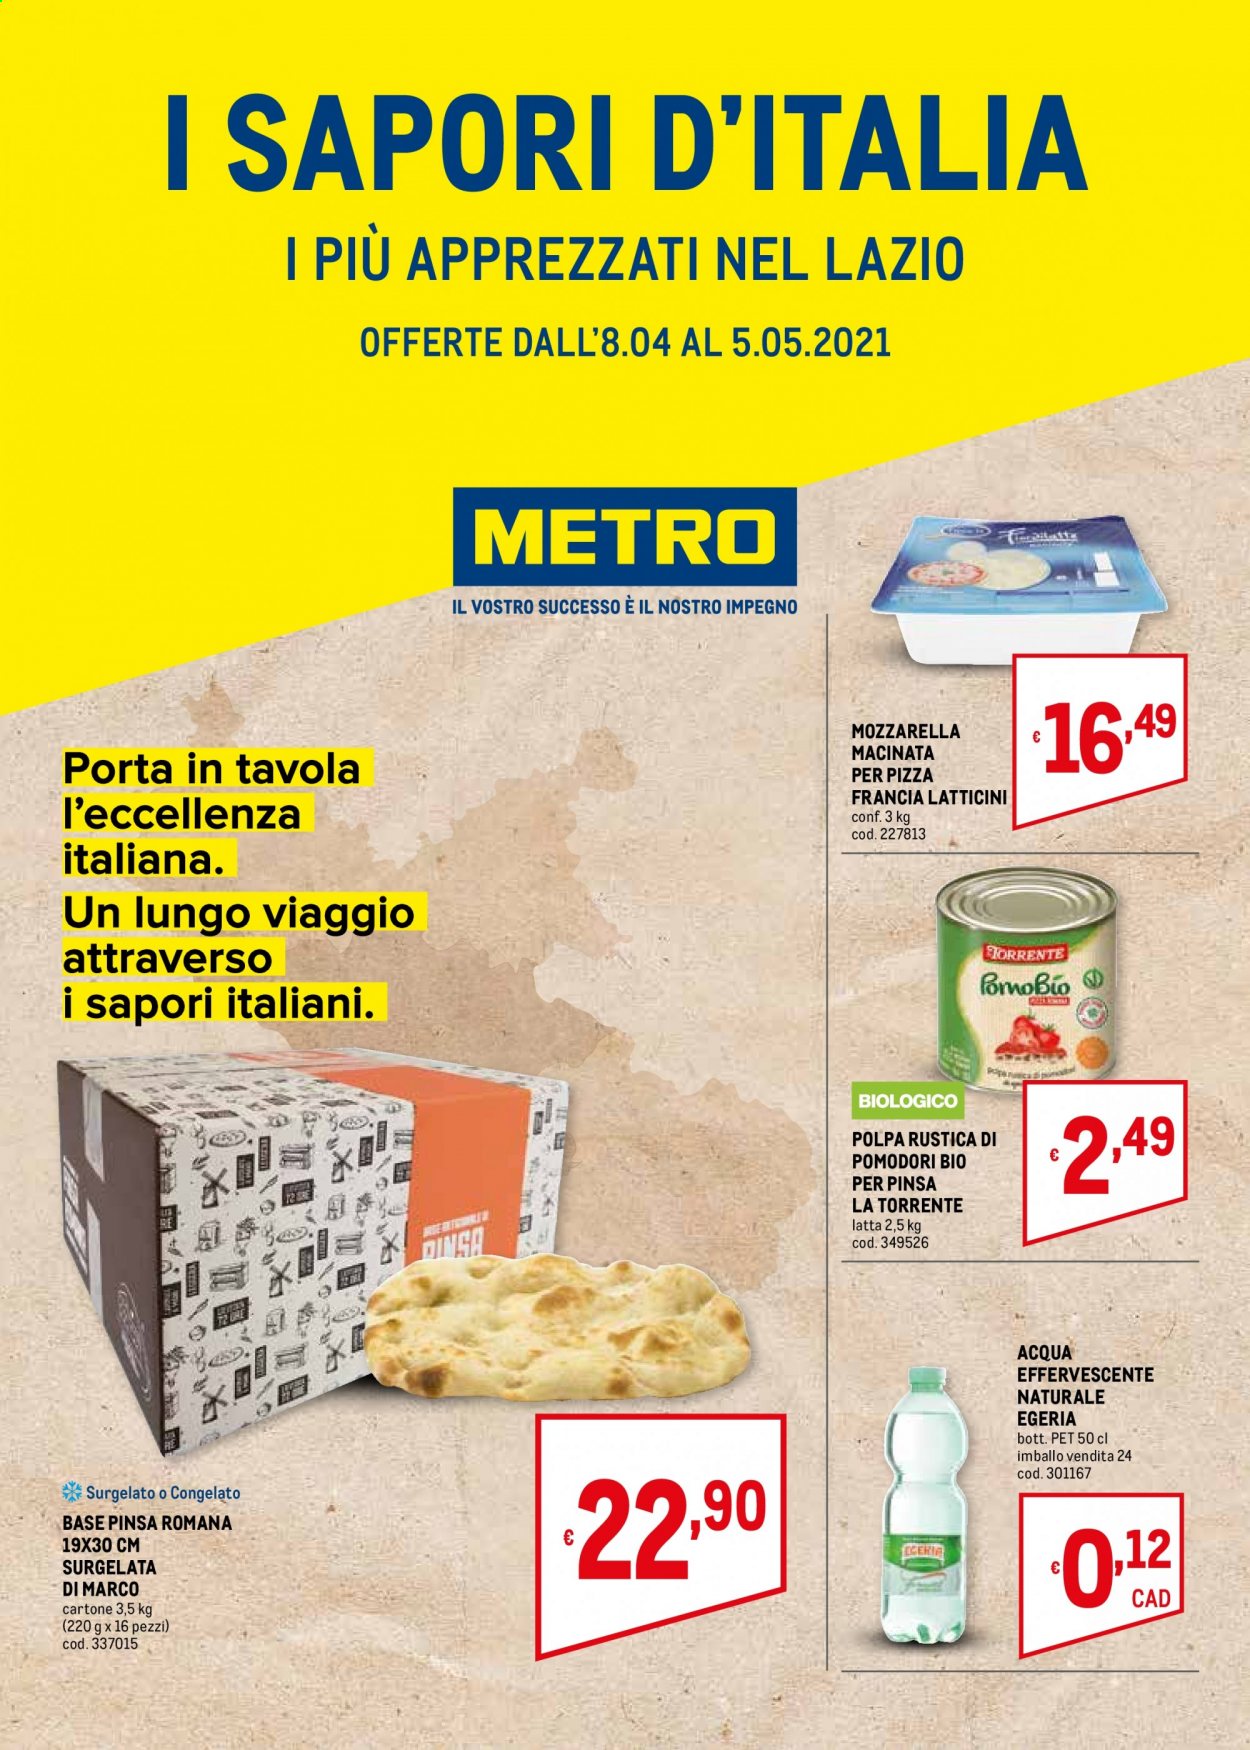 thumbnail - Volantino Metro - 8/4/2021 - 5/5/2021 - Prodotti in offerta - base pinsa, formaggio, mozzarella, La Torrente. Pagina 1.